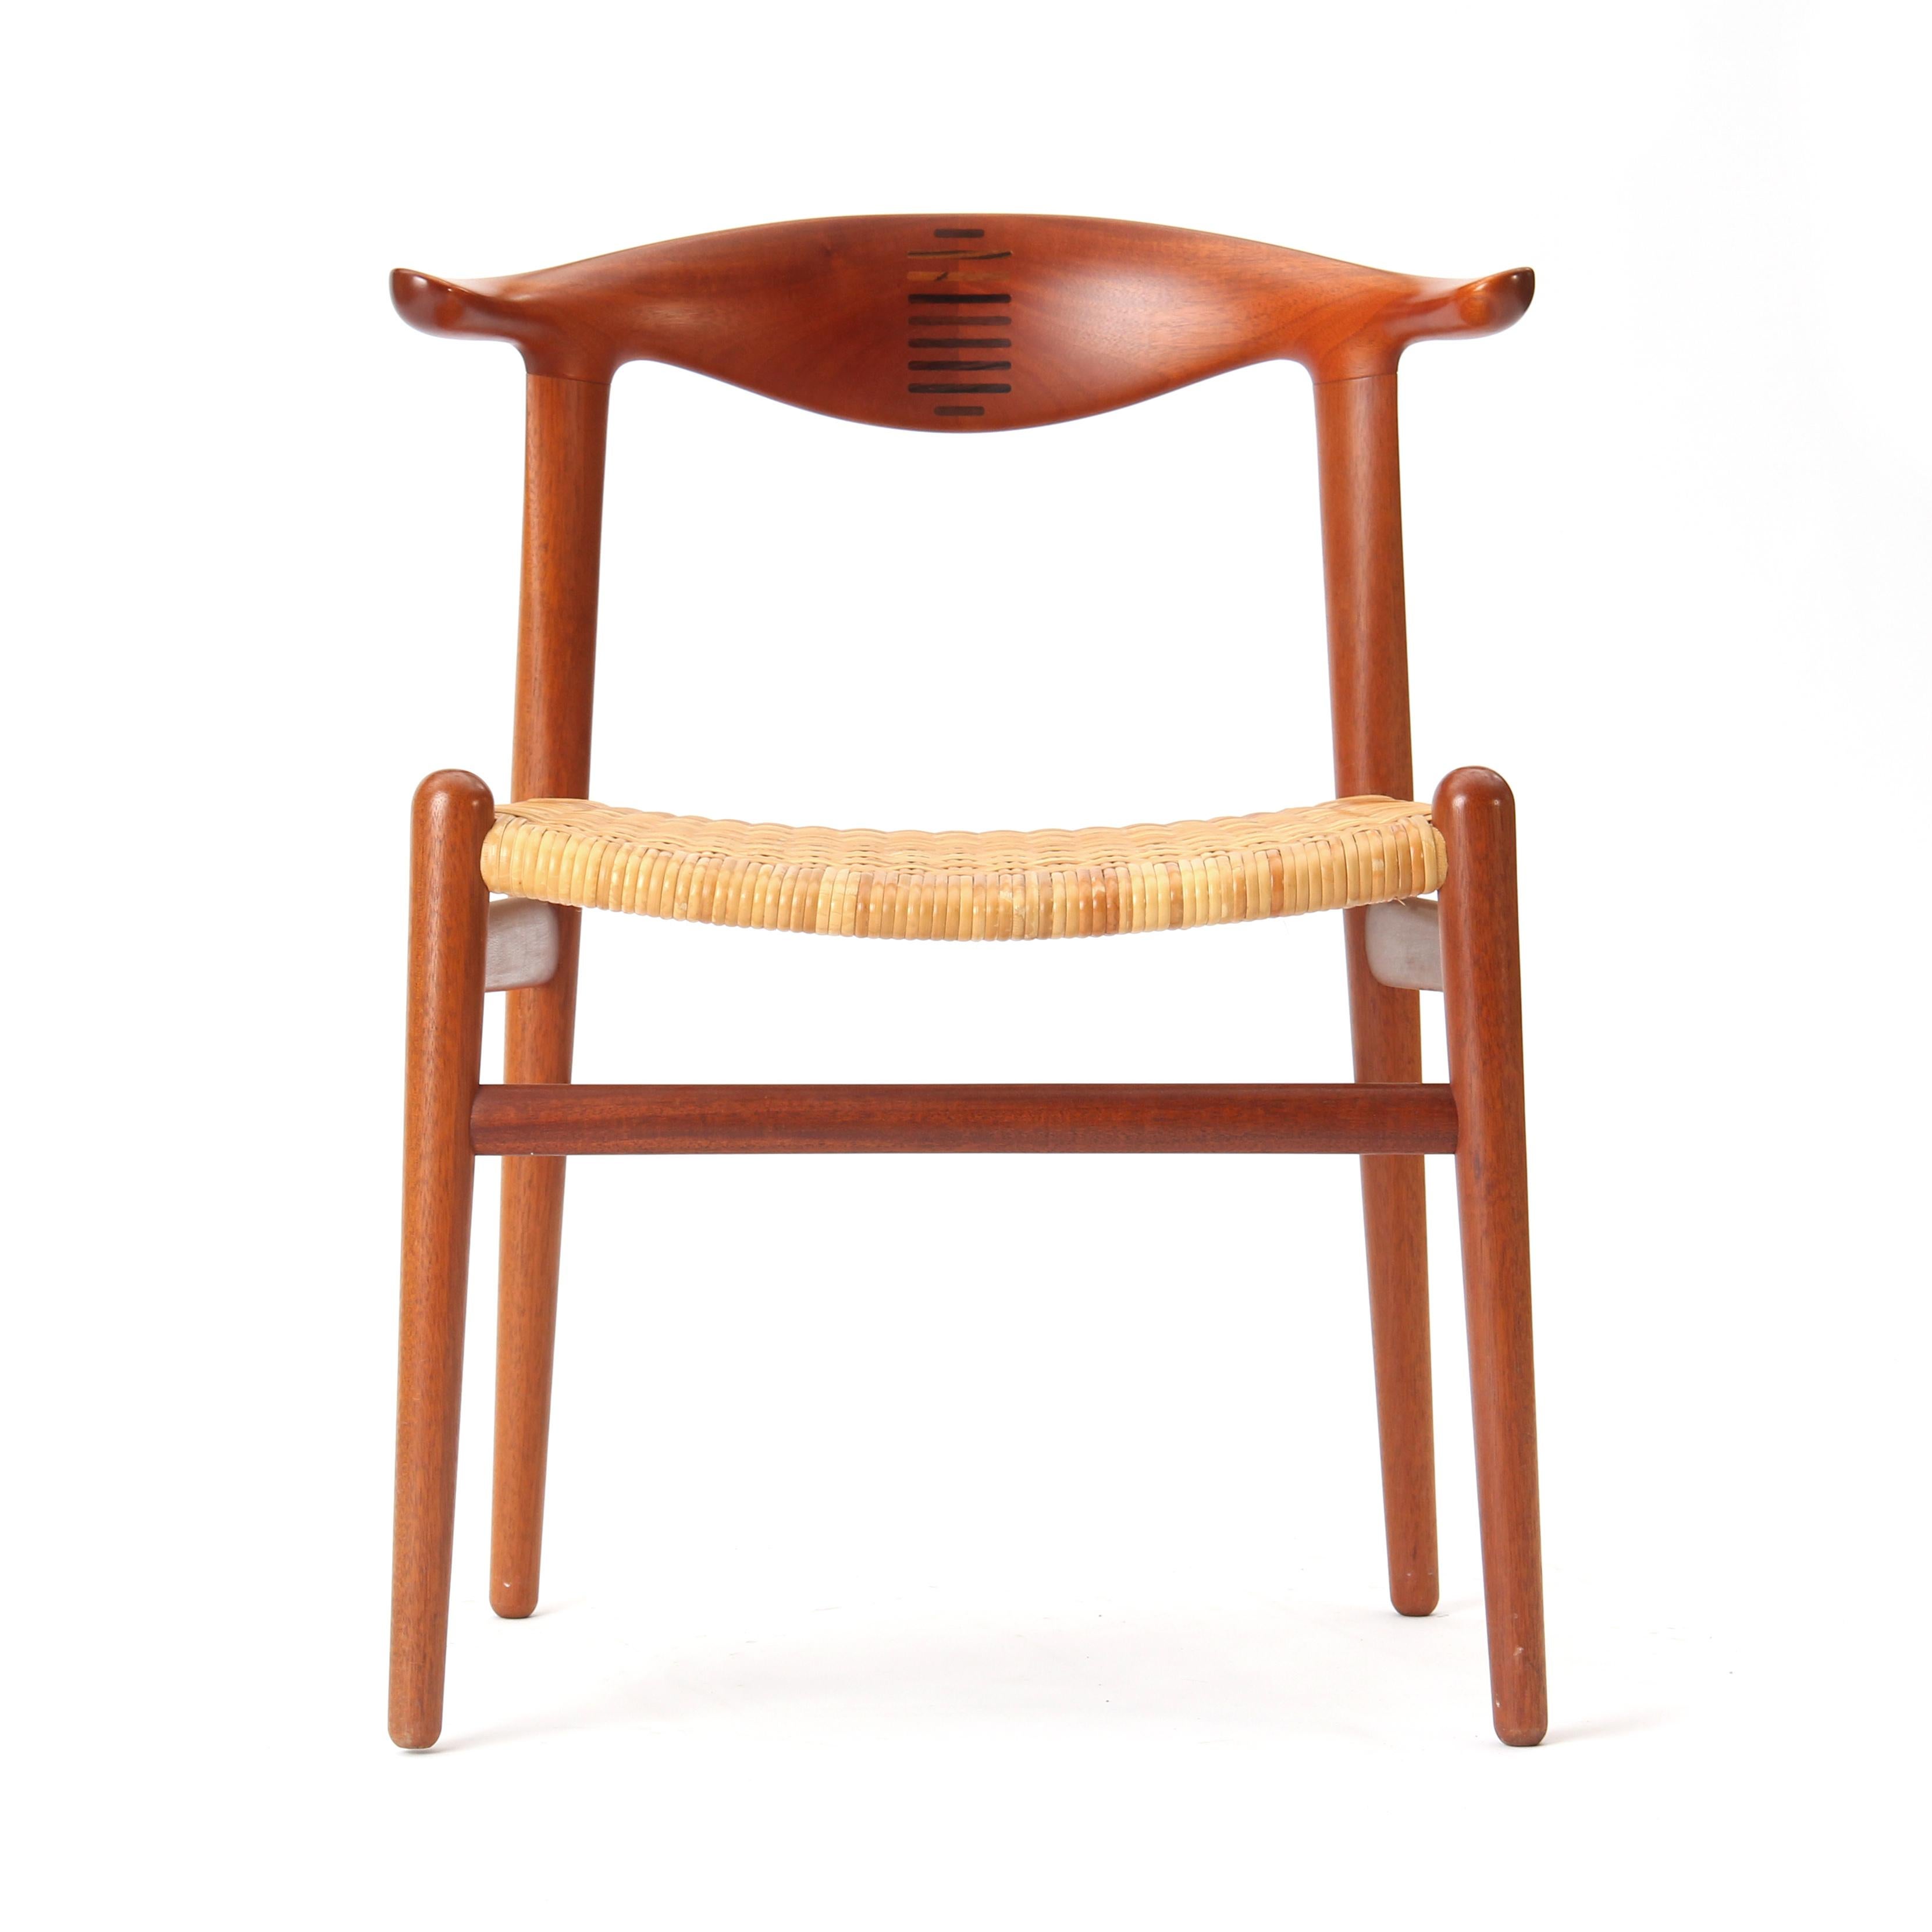 Ein seltener moderner dänischer Esszimmerstuhl aus Teakholz mit gekerbter Rückenlehne und einem Sitz aus natürlichem Schilfrohr. Das Modell JH-505 wurde 1952 von Hans J. Wegner entworfen und in den 1960er Jahren von Johannes Hansen hergestellt.